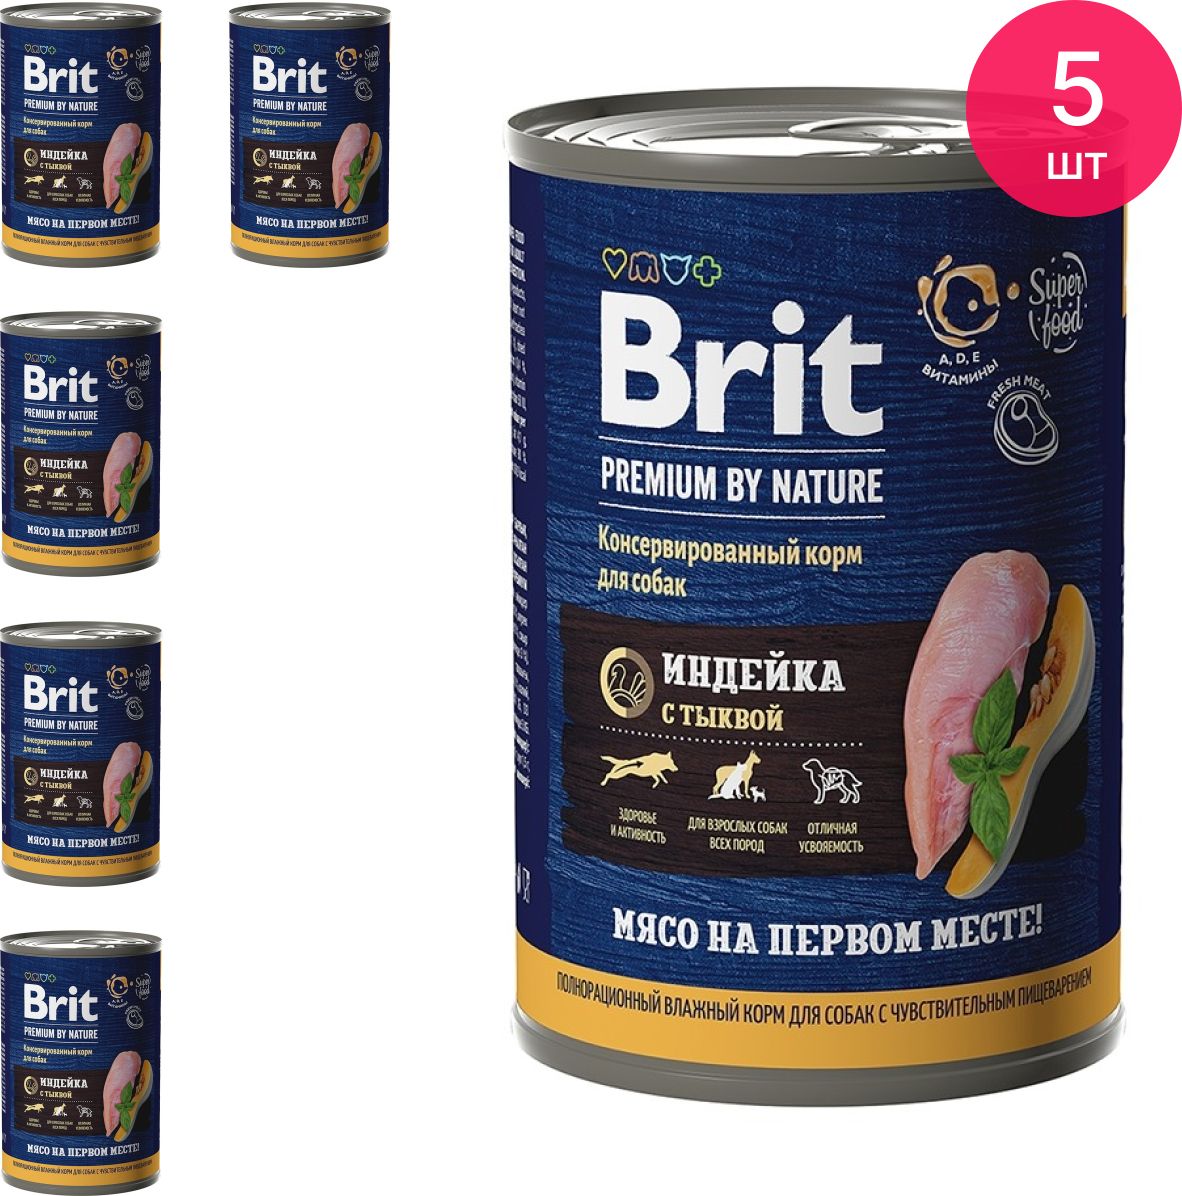 Влажный корм Brit. Консервы Brit для собак индейка с тыквой дозировка. Brit Premium by nature, Junior s 15kg. Брит влажный корм для собак